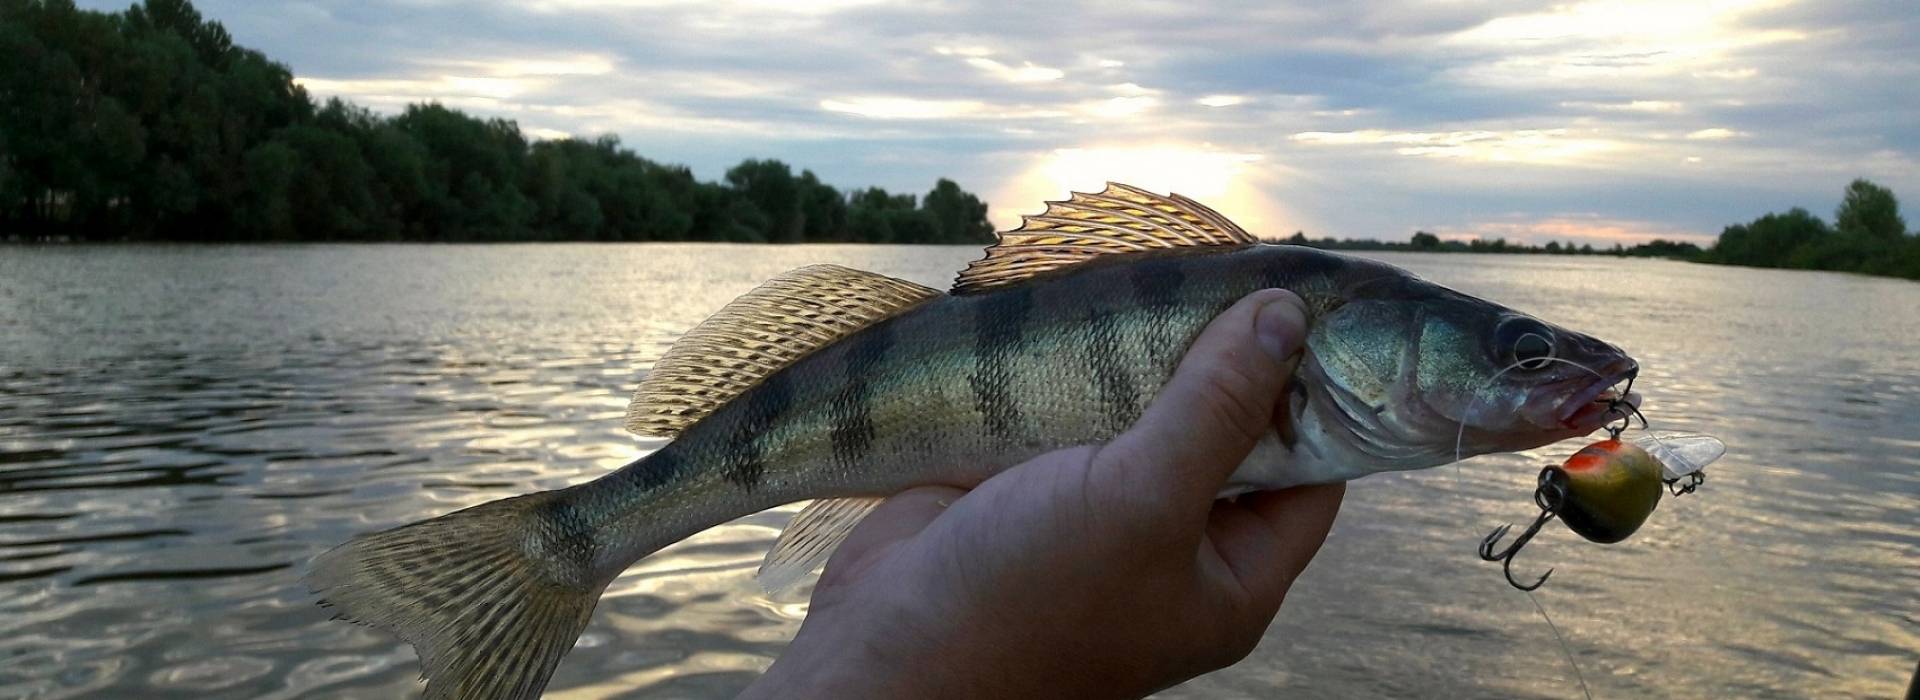 Рыбалка на канале имени москвы: места ловли, какая рыба клюет и когда ловить?